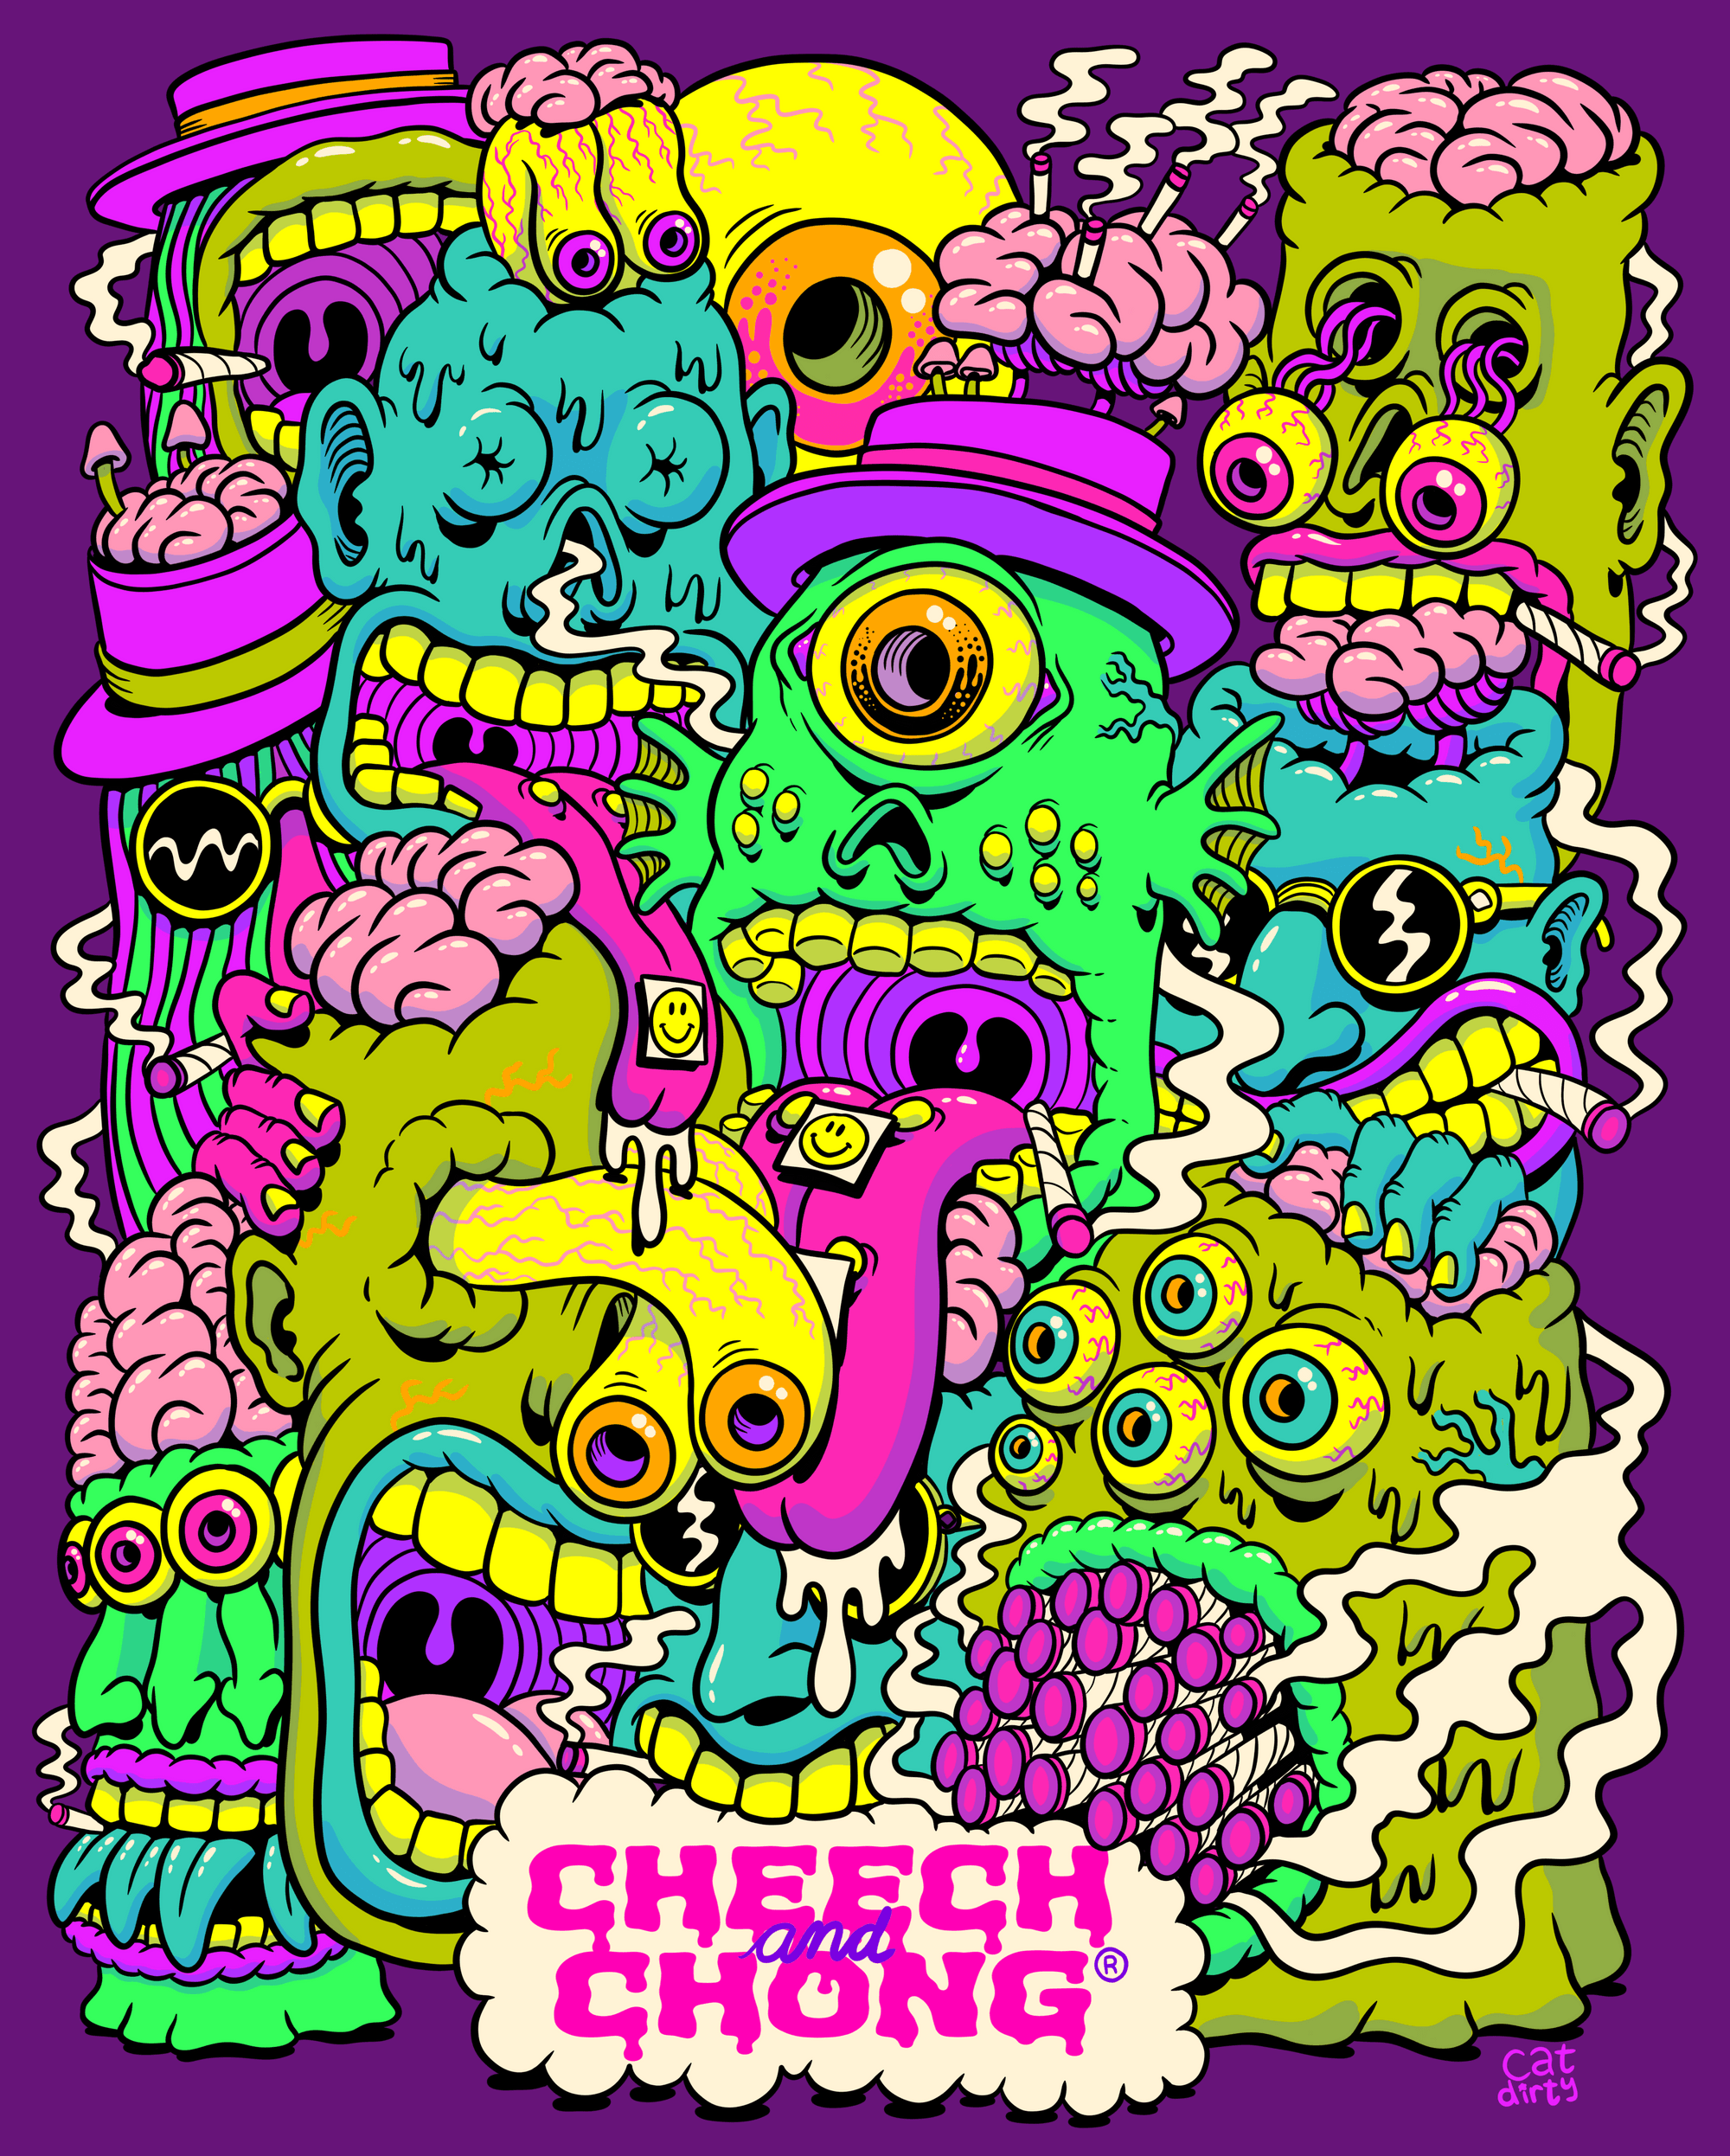 Cheech & Chong: Cat Dirty - 10/22 - Cheech and Chong Poster Art | OpenSea